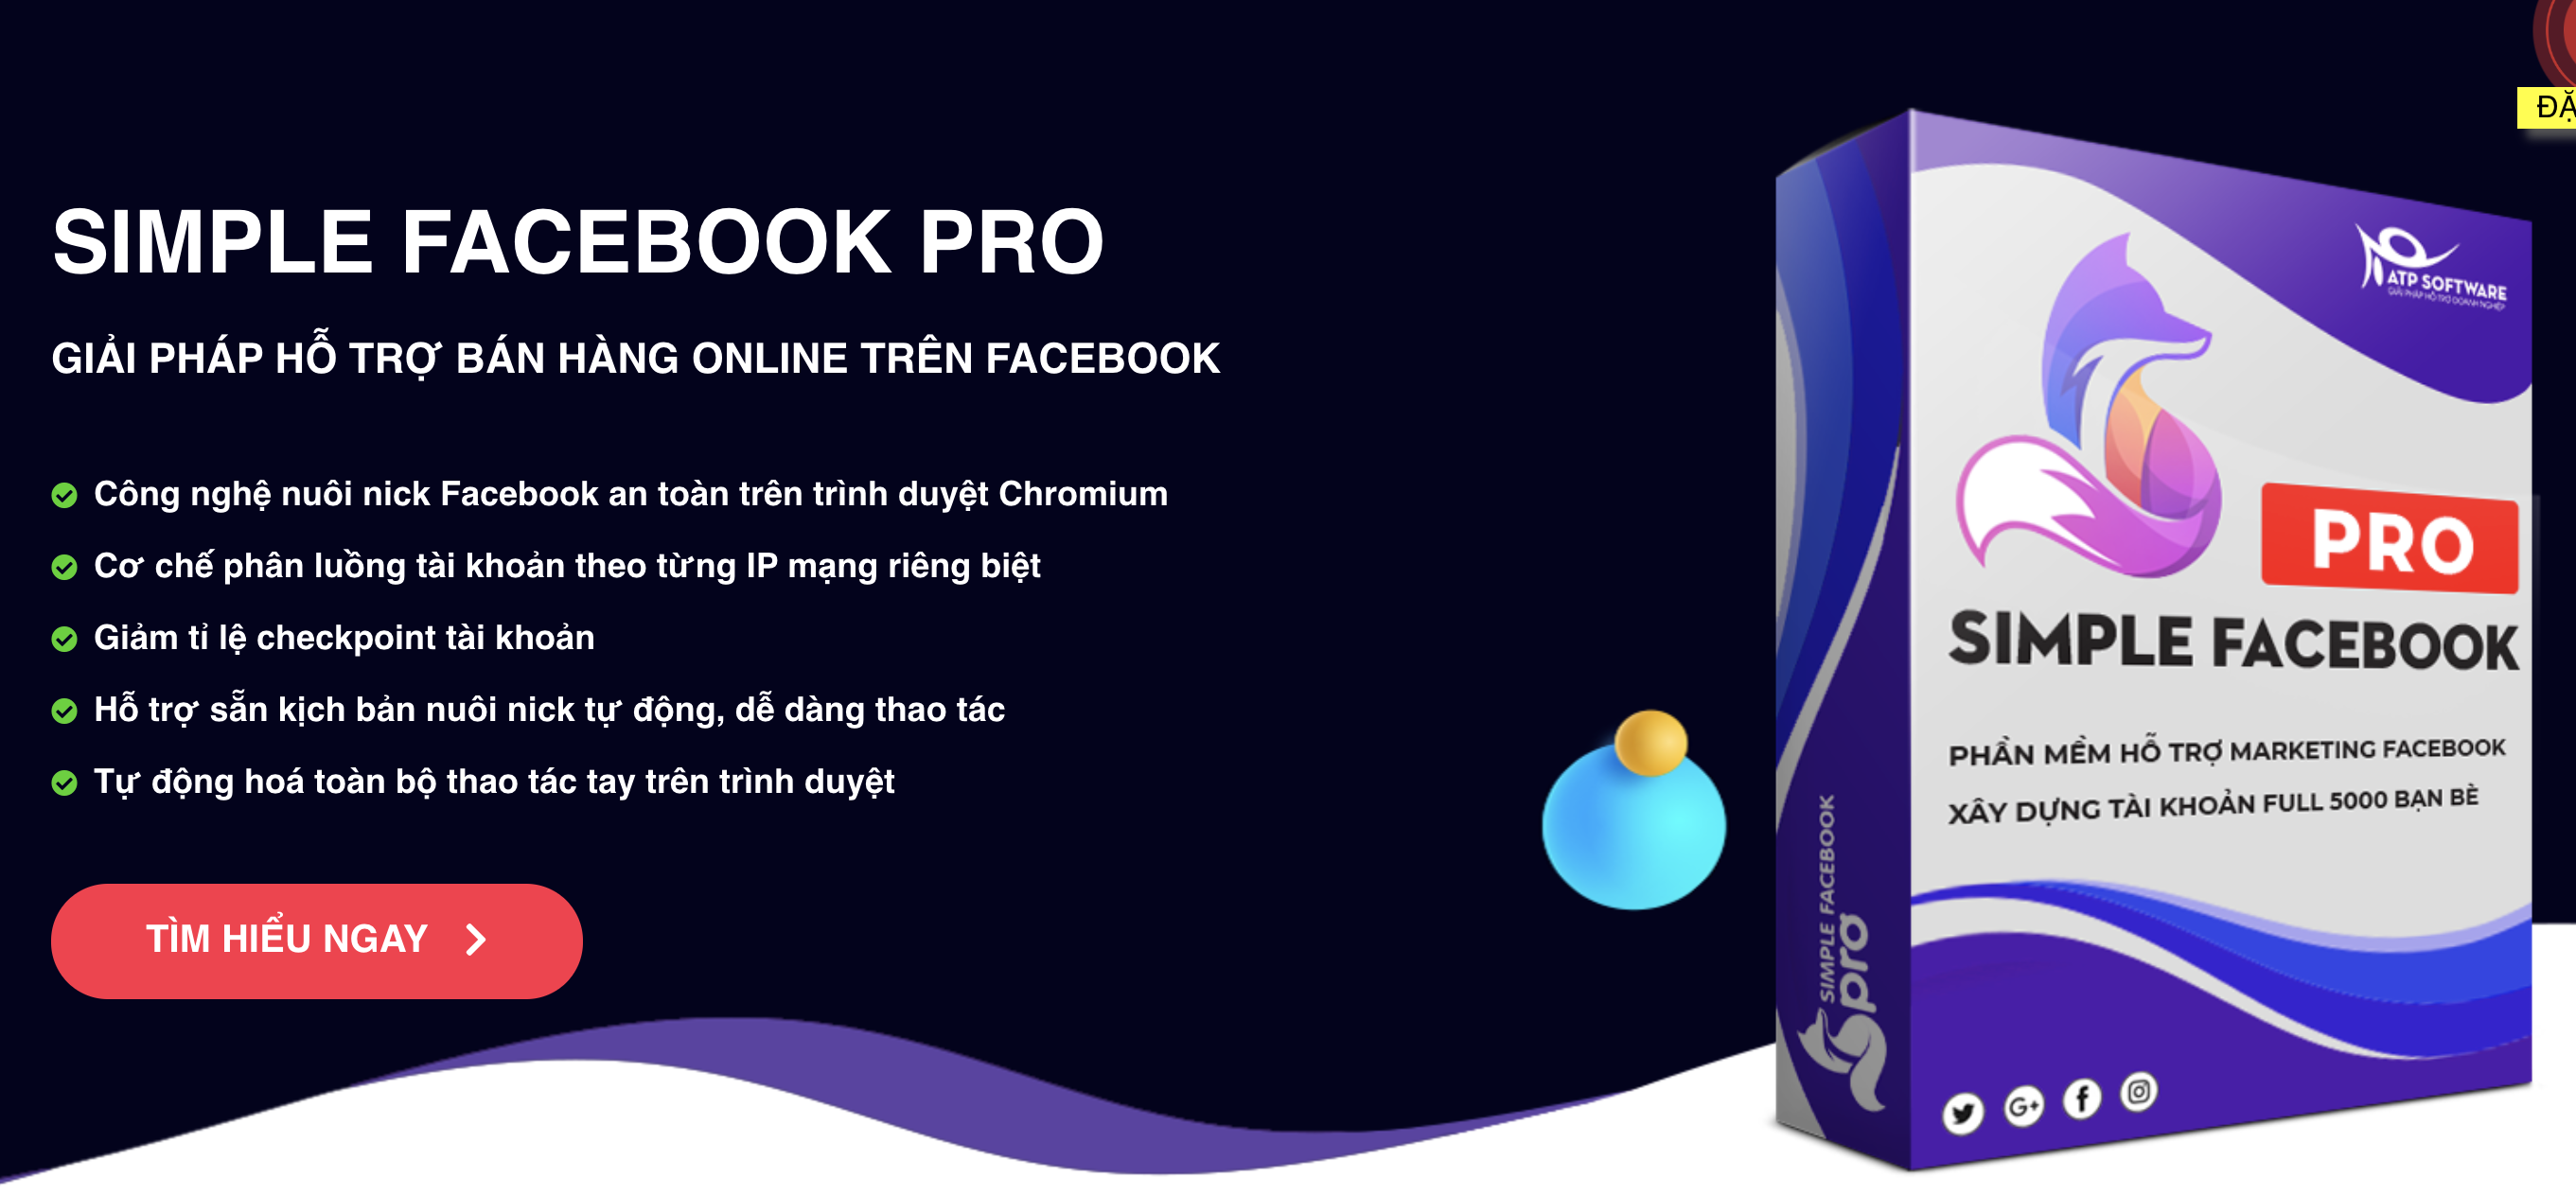 Simple Facebook Pro - Phần mềm hỗ trợ đặt lịch đăng bài facebook